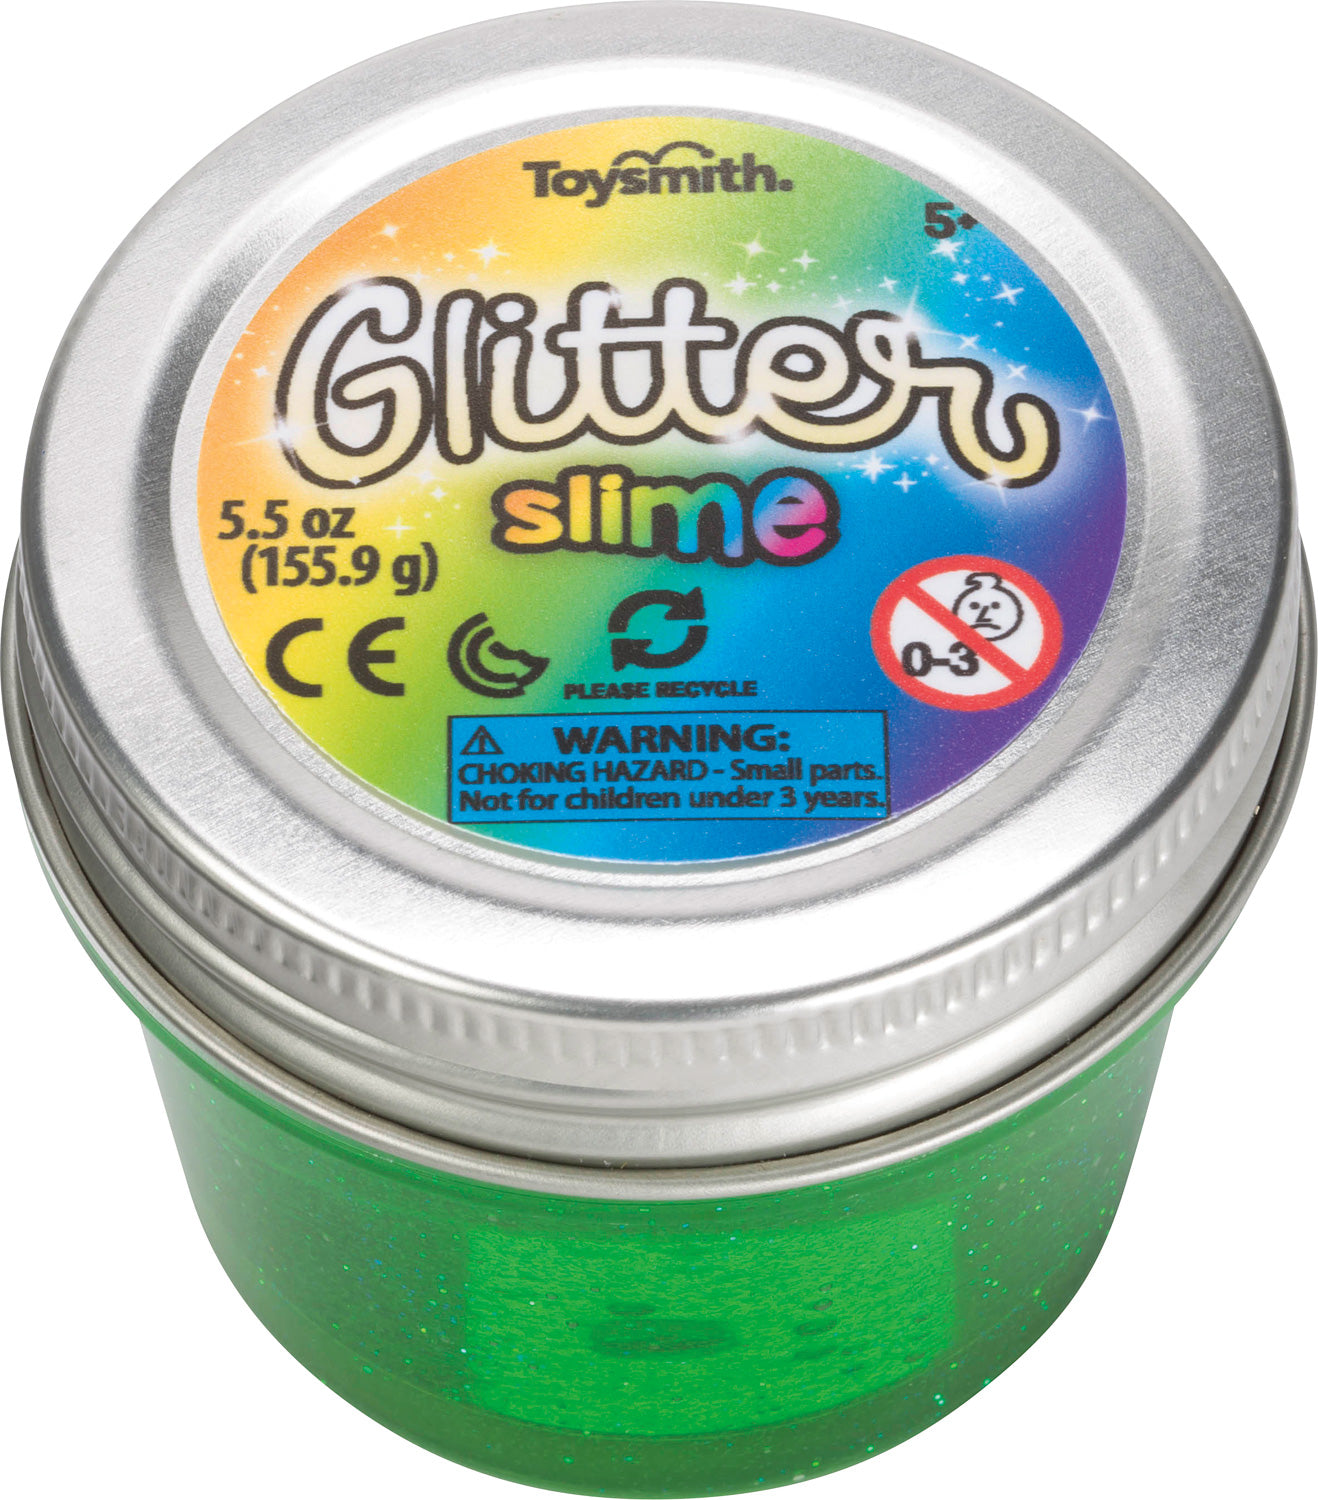 Glitter Slime by Toysmith #7017